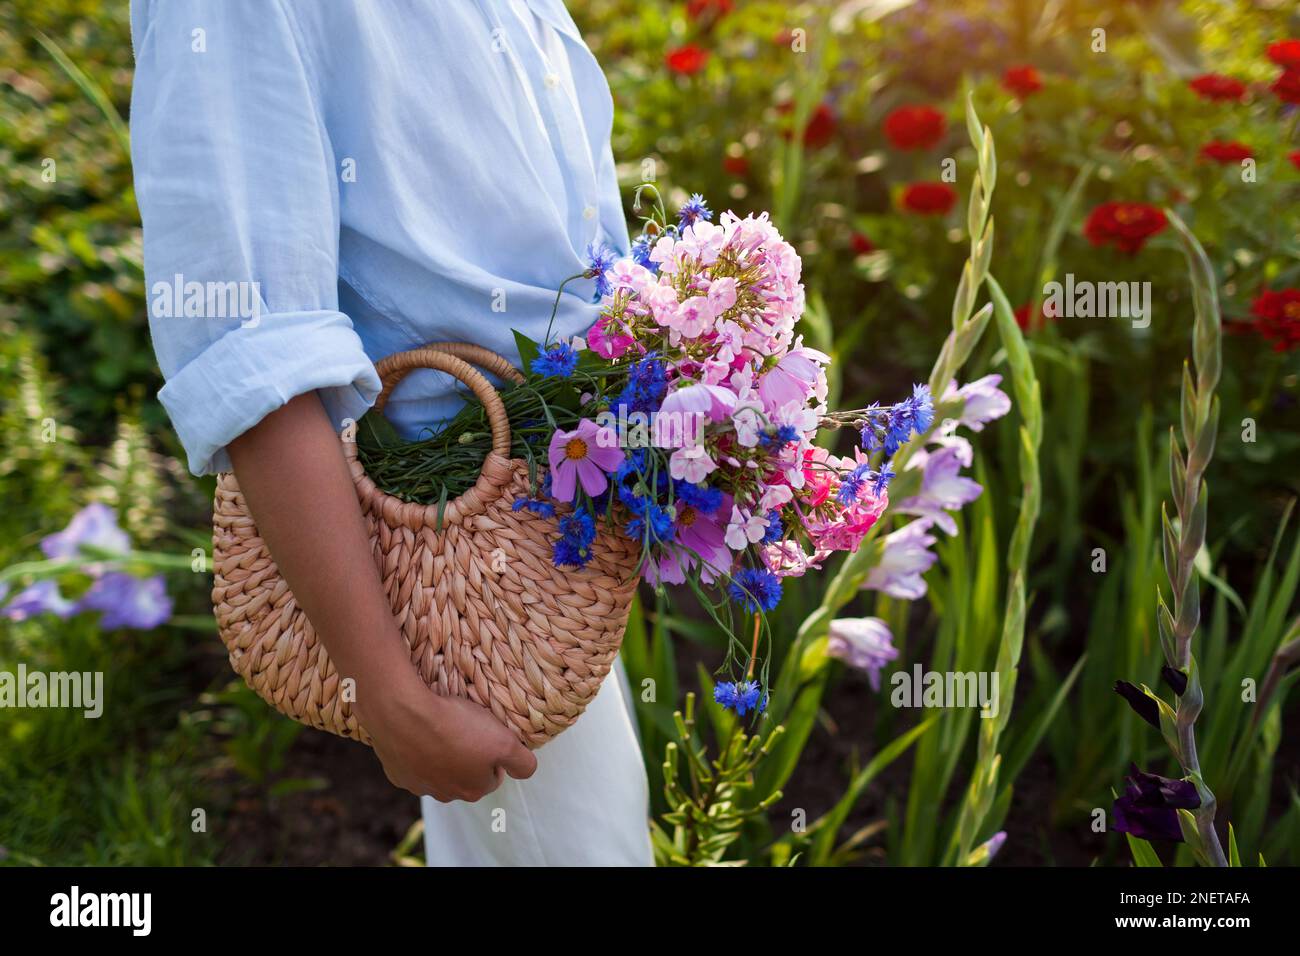 Primo piano del sacchetto di paglia riempito con fiori blu e rosa. Donna in possesso di borsa estiva con bouquet di fiori. Accessori femminili alla moda Foto Stock